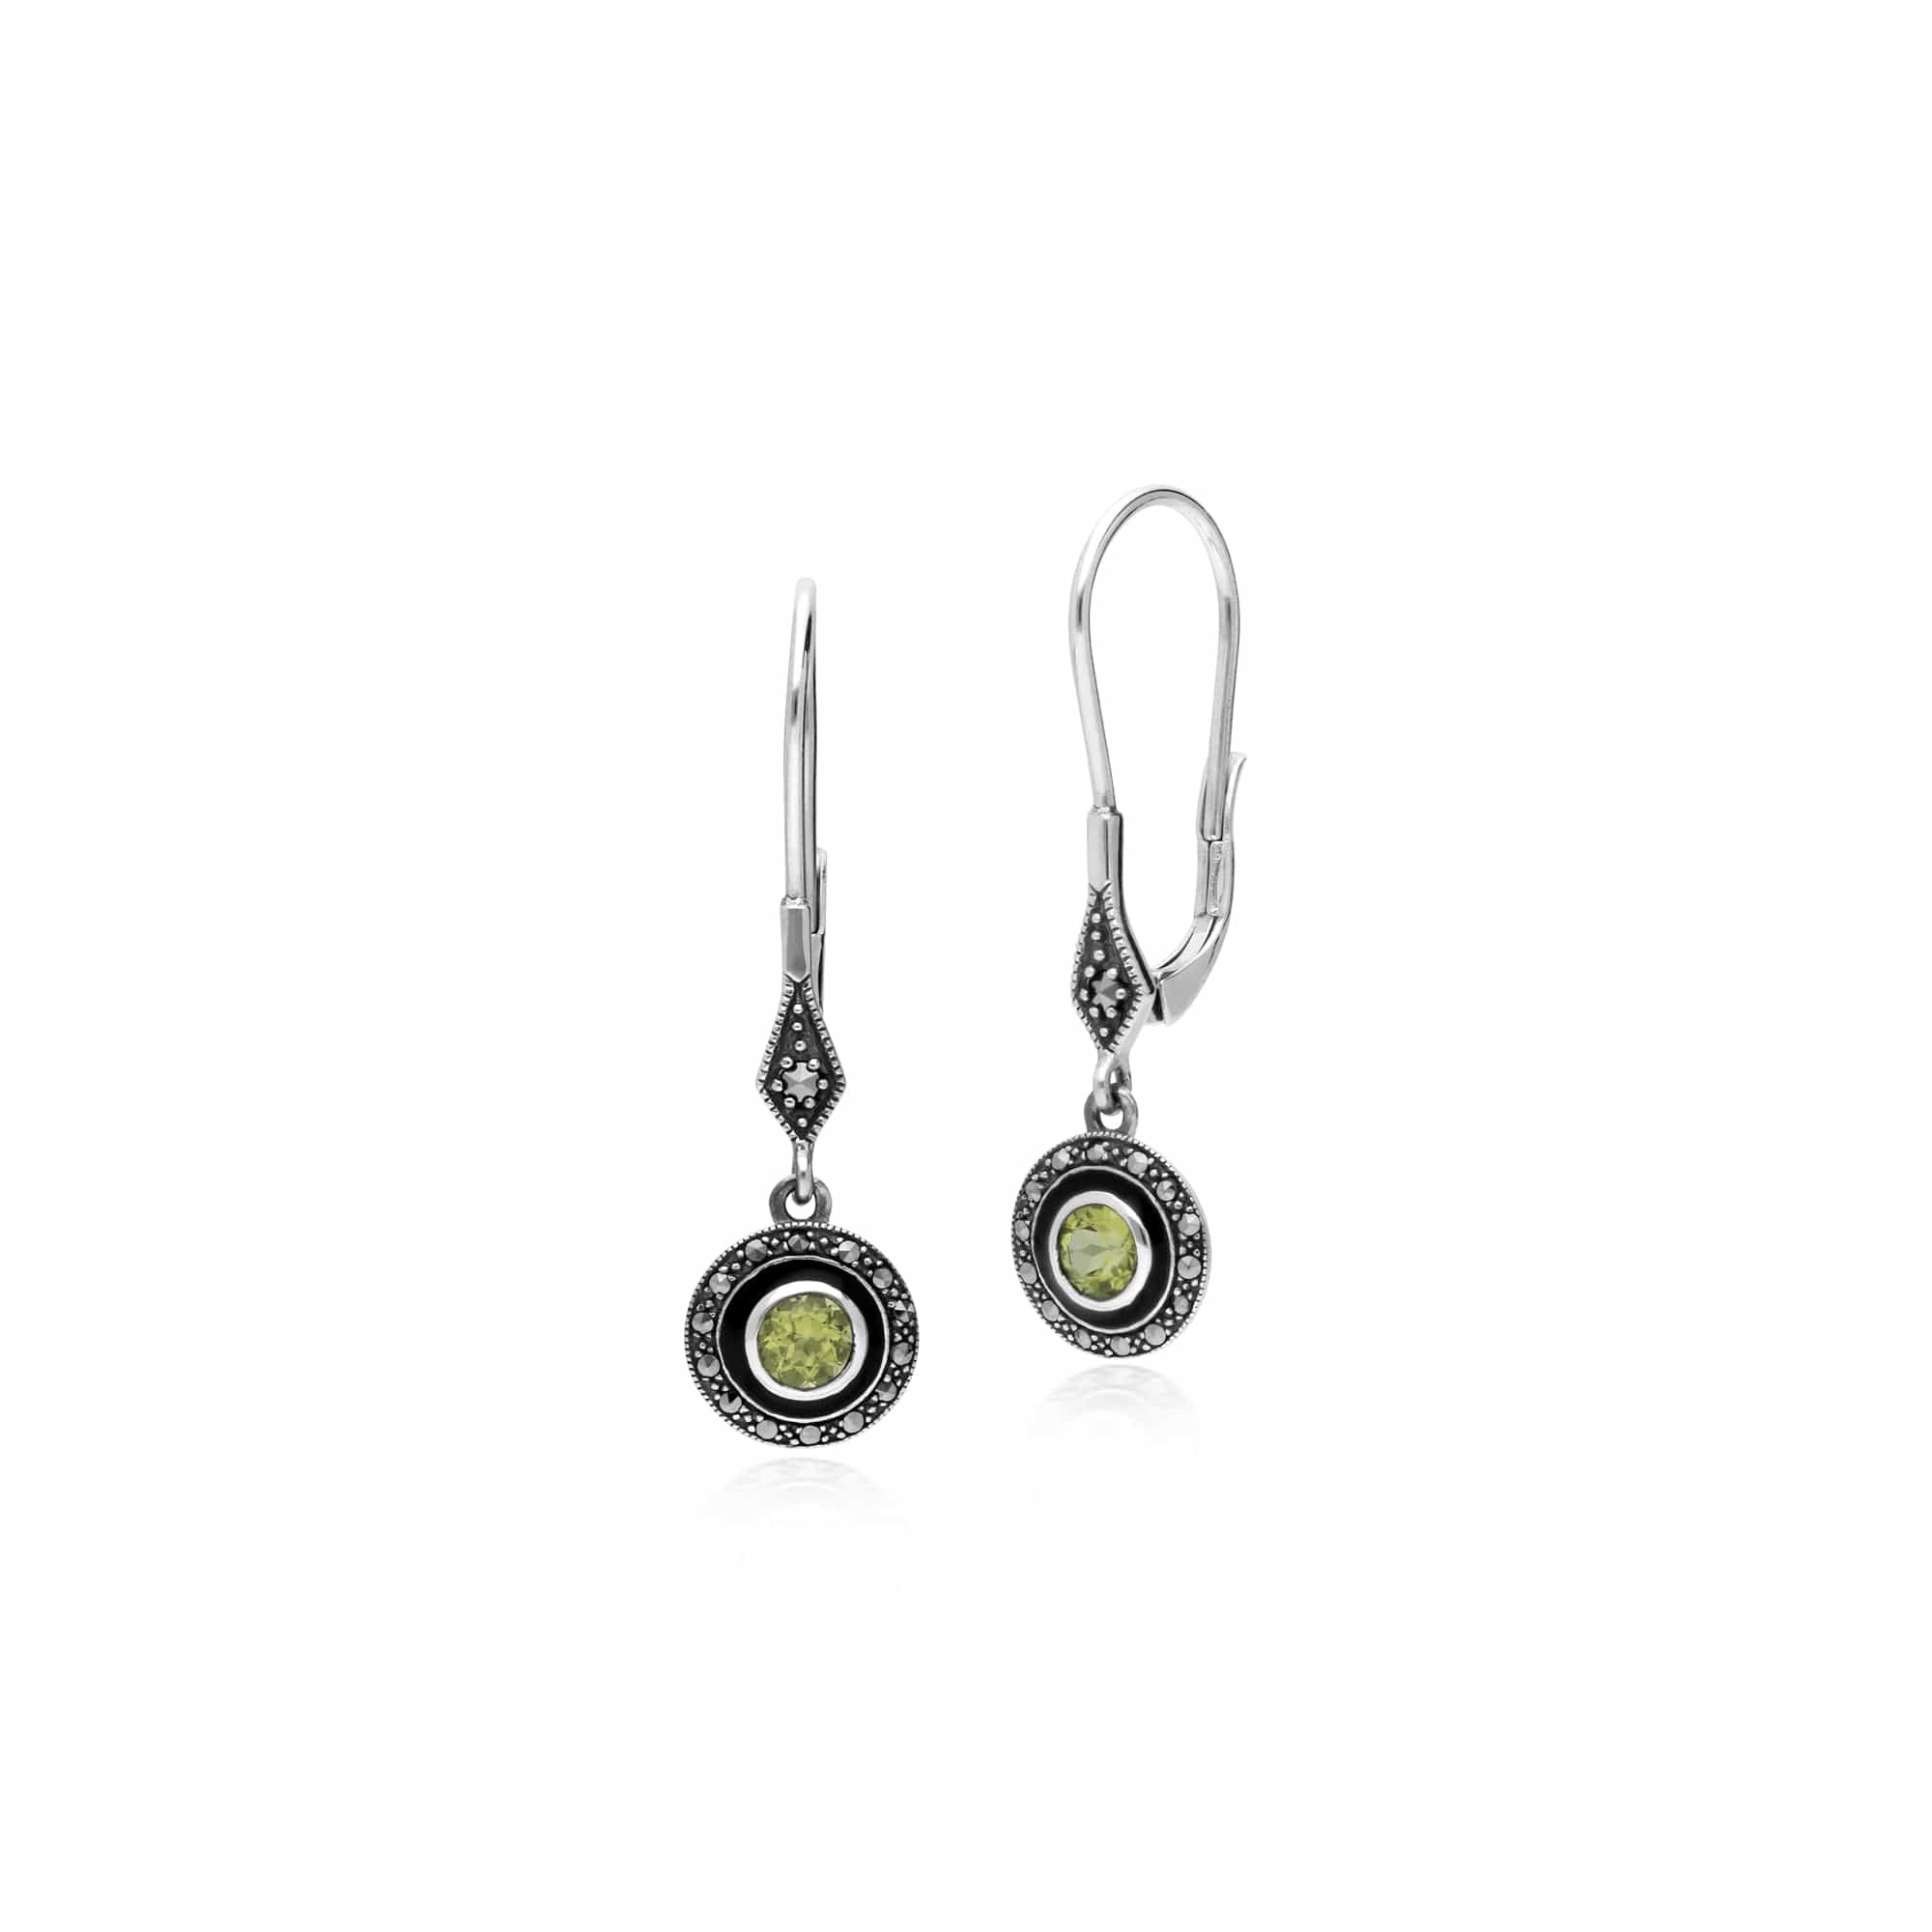 214E860704925-214R599604925 Art Deco Style Round Peridot, Marcasite & Black Enamel Drop Earrings & Ring Set in 925 Sterling Silver 2